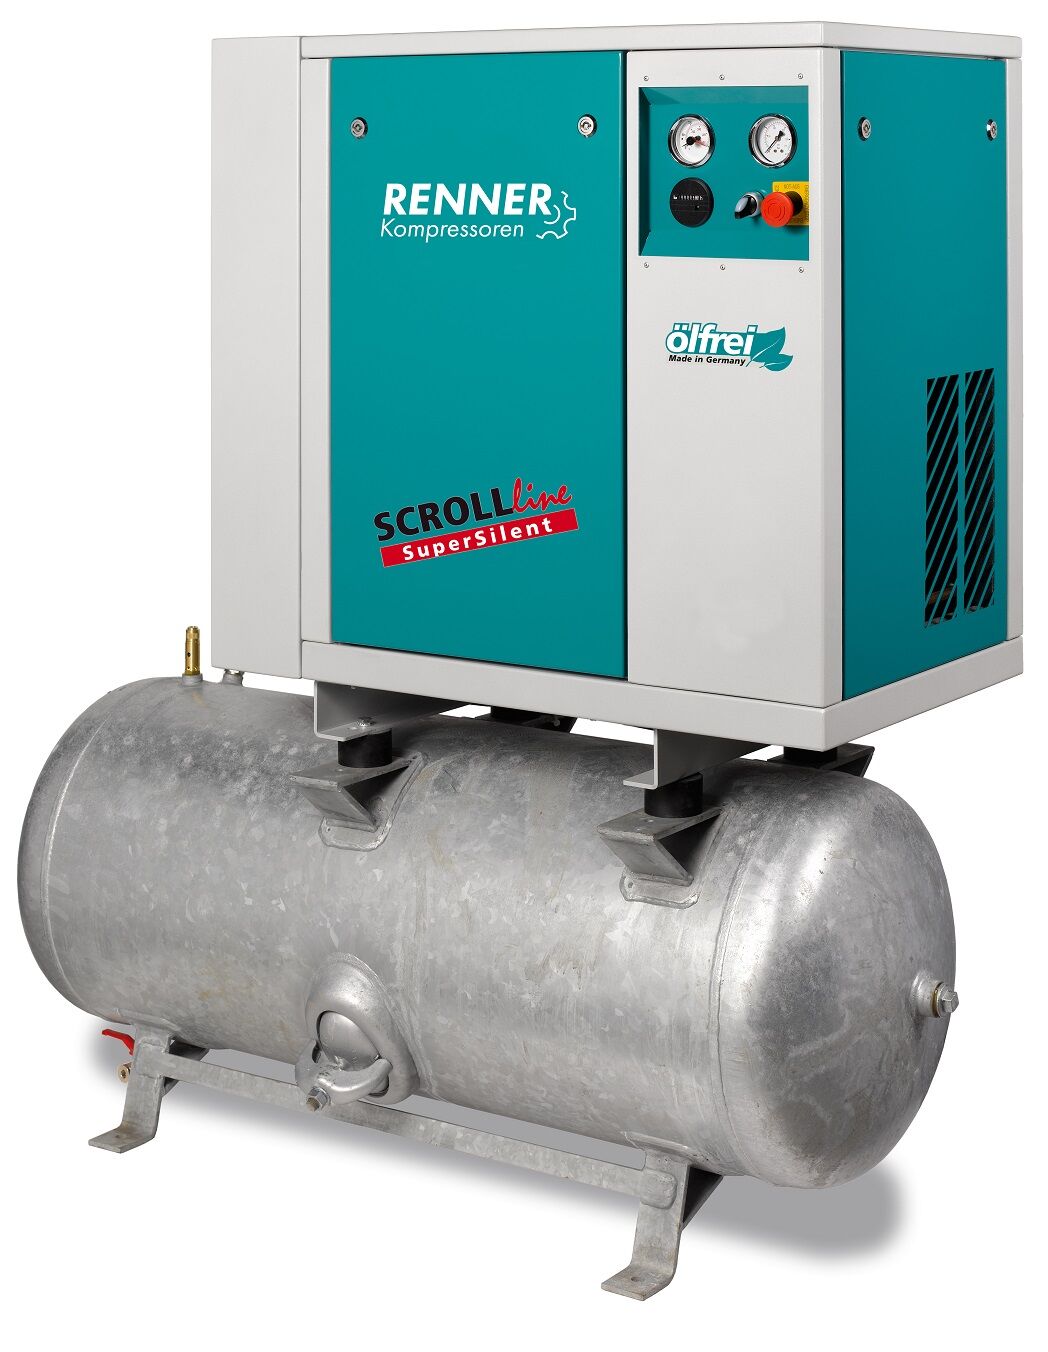 RENNER-Kompressor SLD-S 5,5 auf 250 Liter Druckbehälter- SuperSilent ölfreier Scrollkompressor